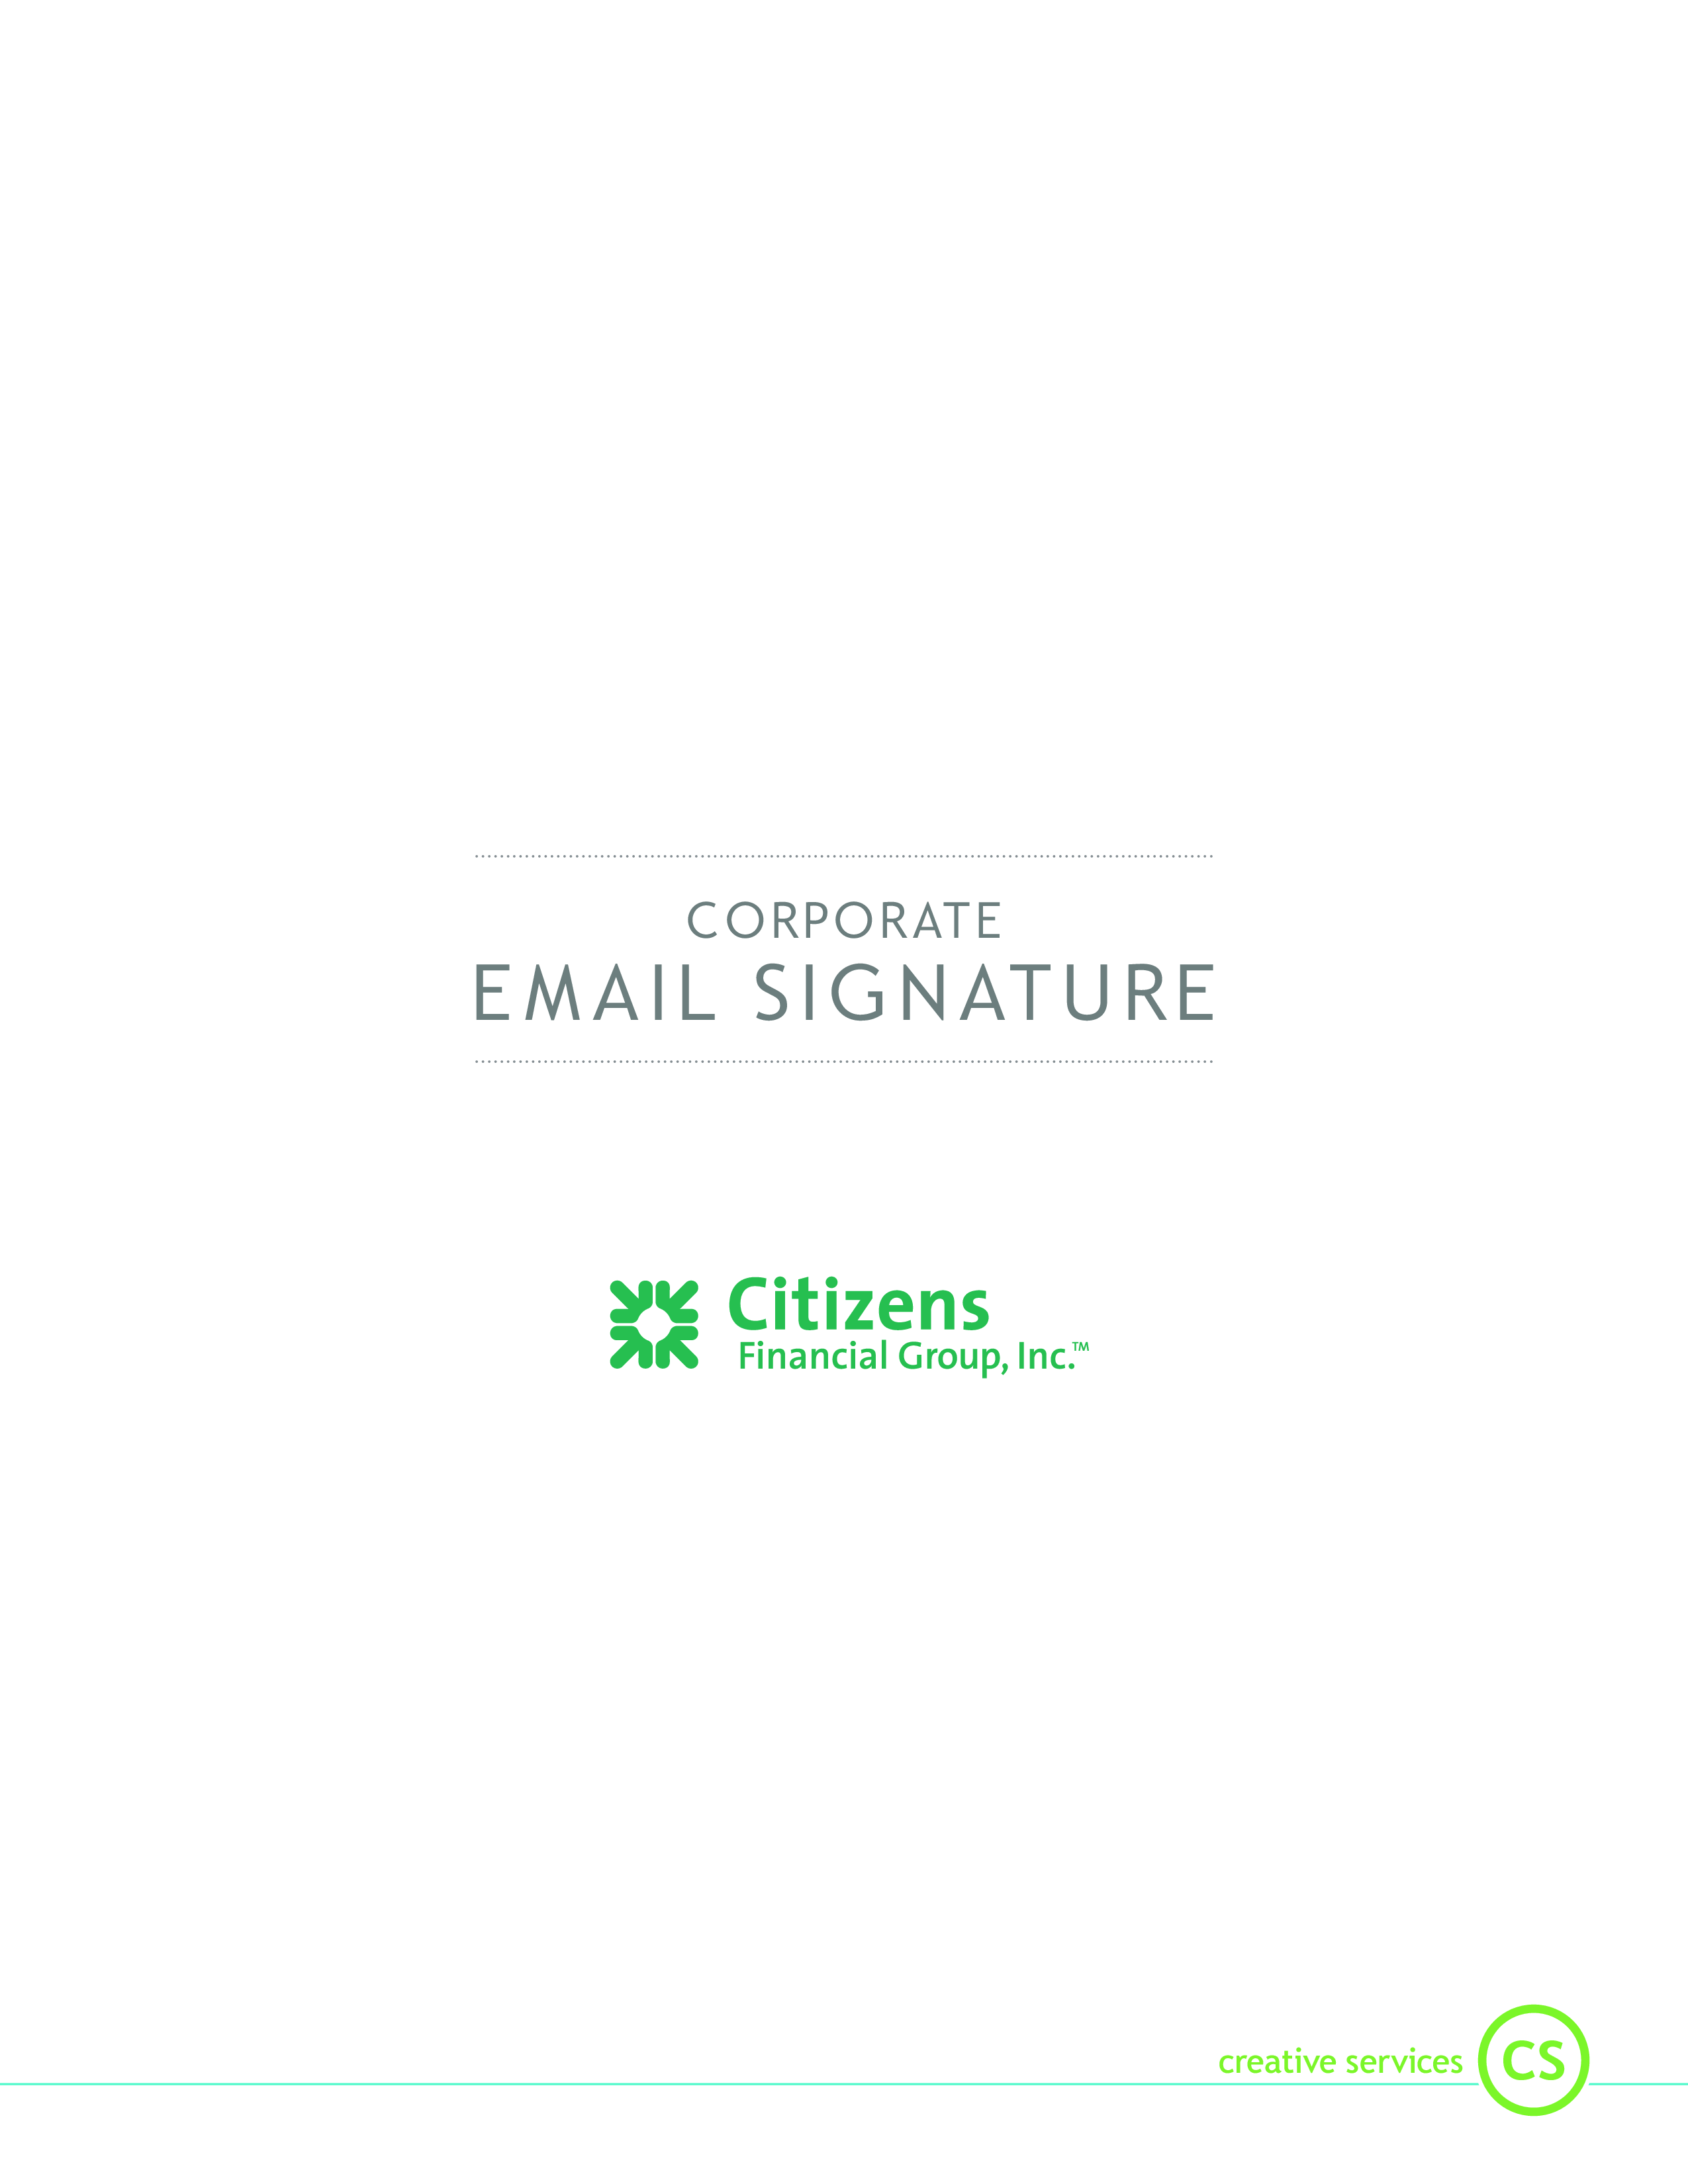 company email signature plantilla imagen principal